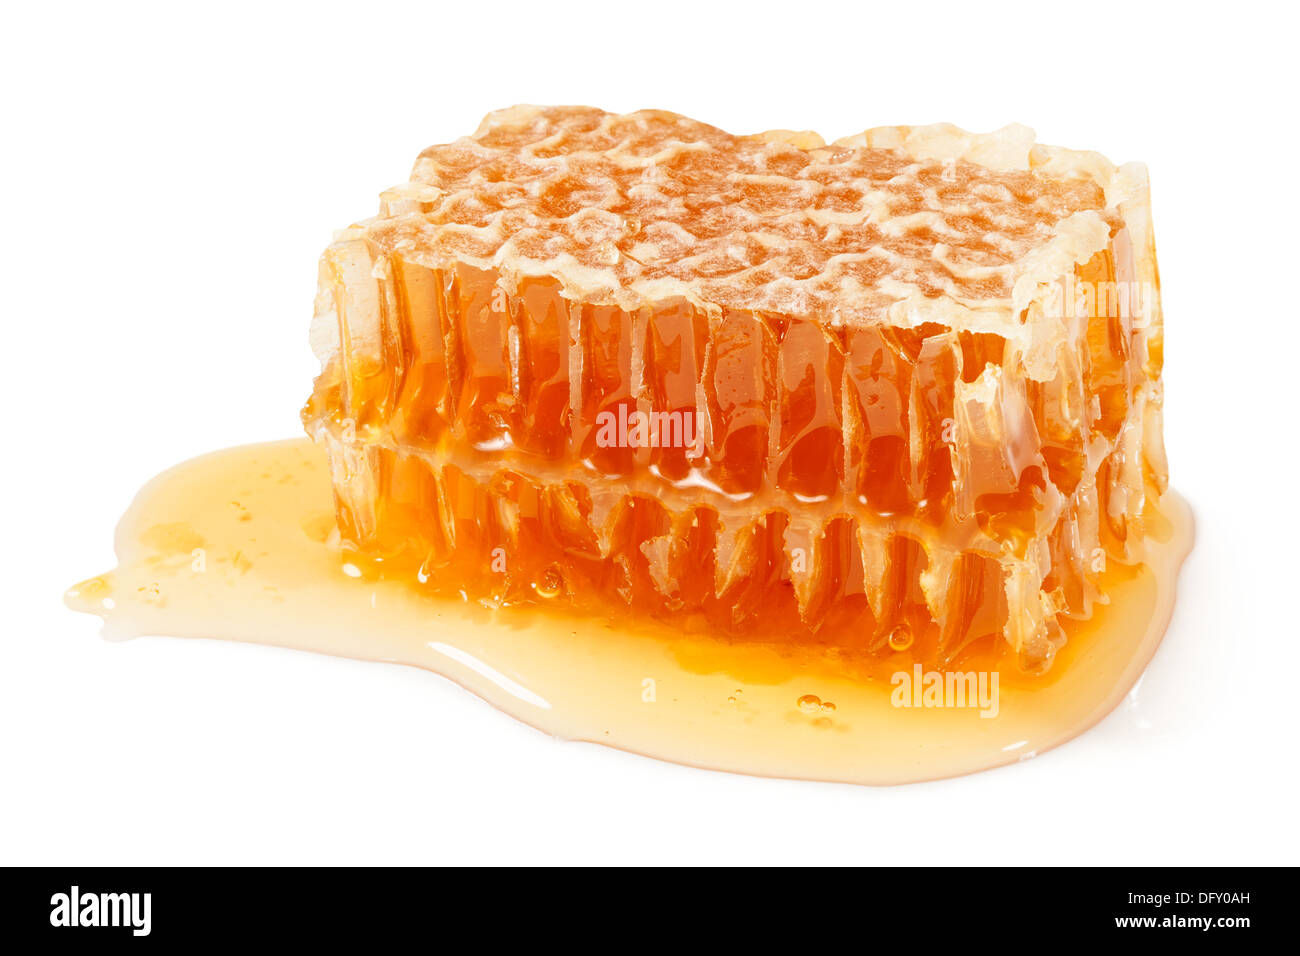 honeycomb chunk on white background Stock Photo